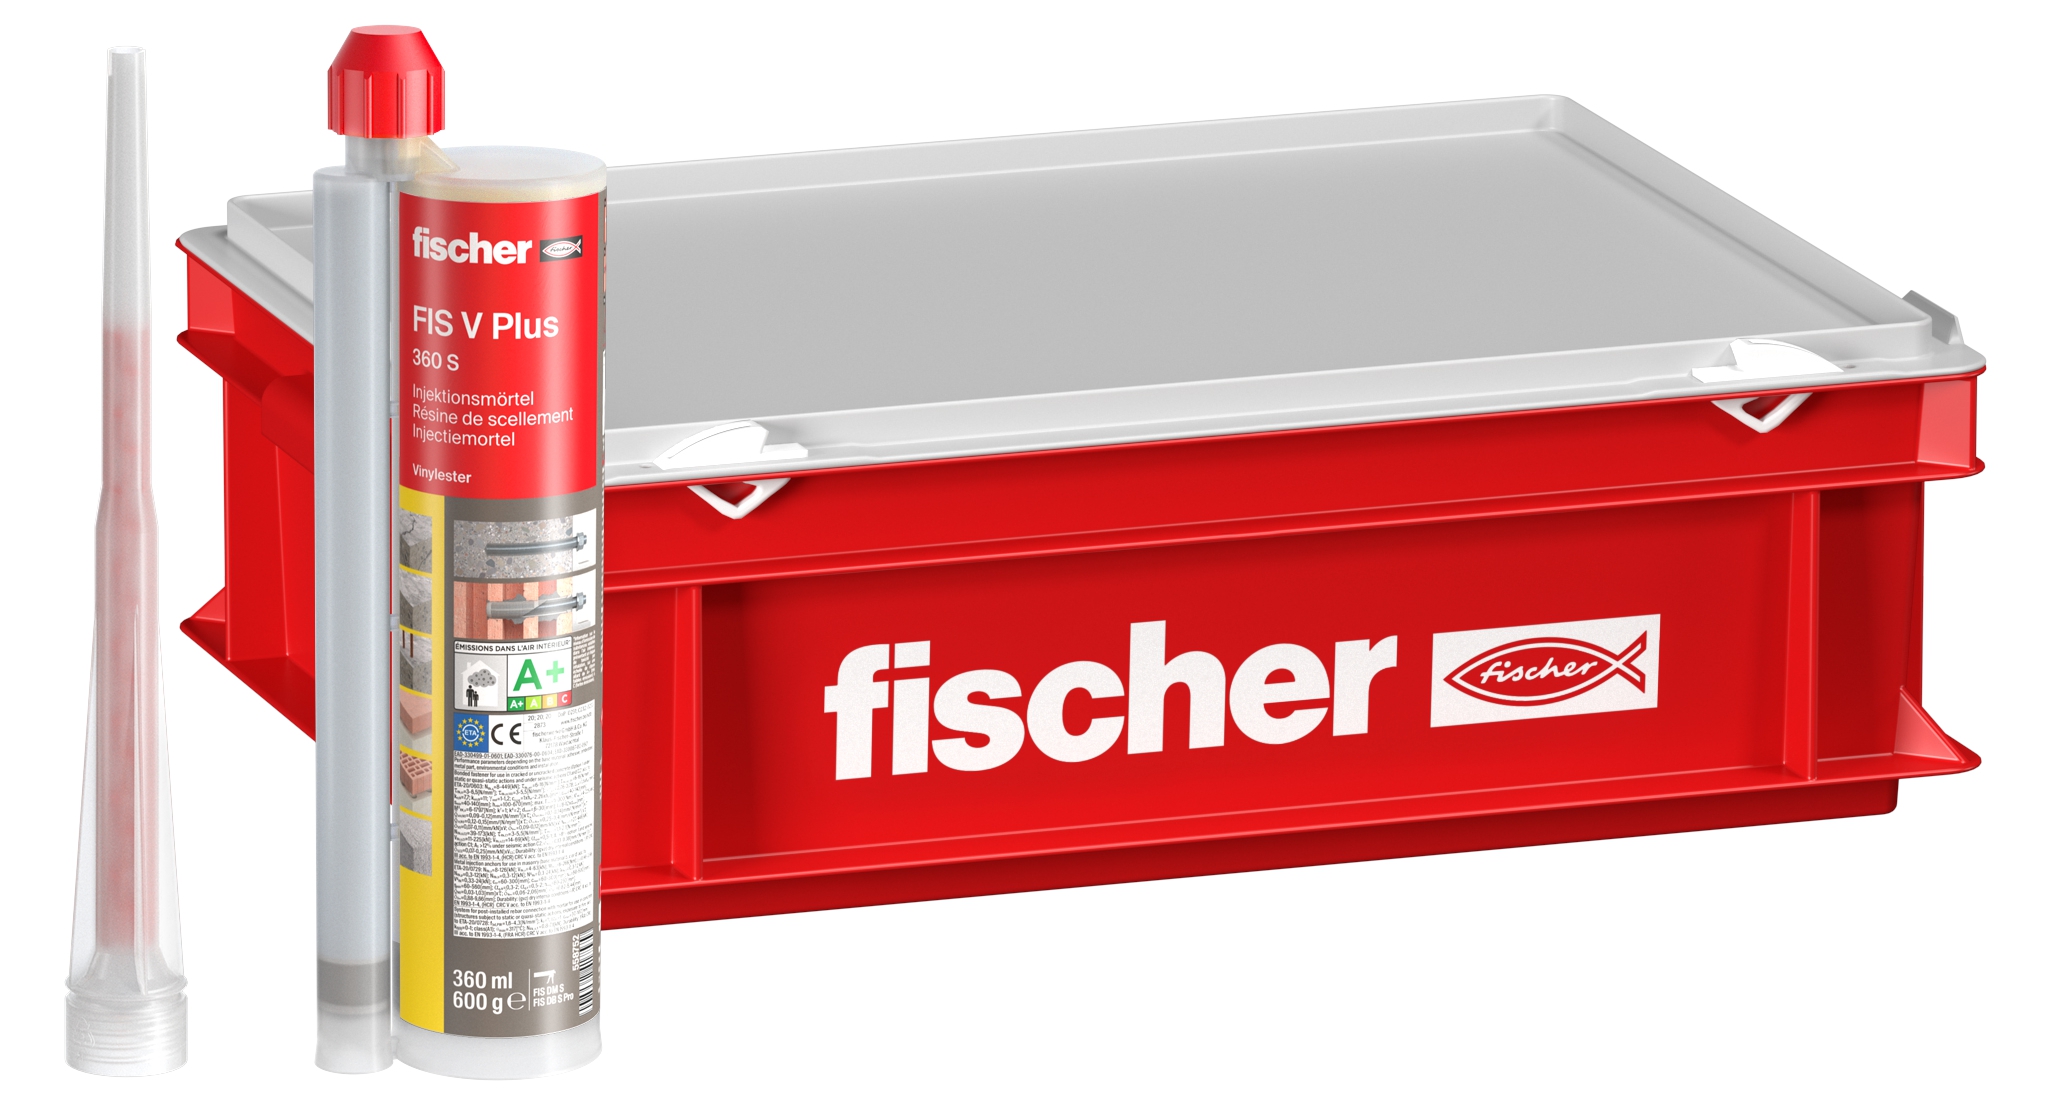 Fischer FIS V Plus 360 S HWK groß. Der kraftvolle Universalmörtel für Beton und Mauerwerk.